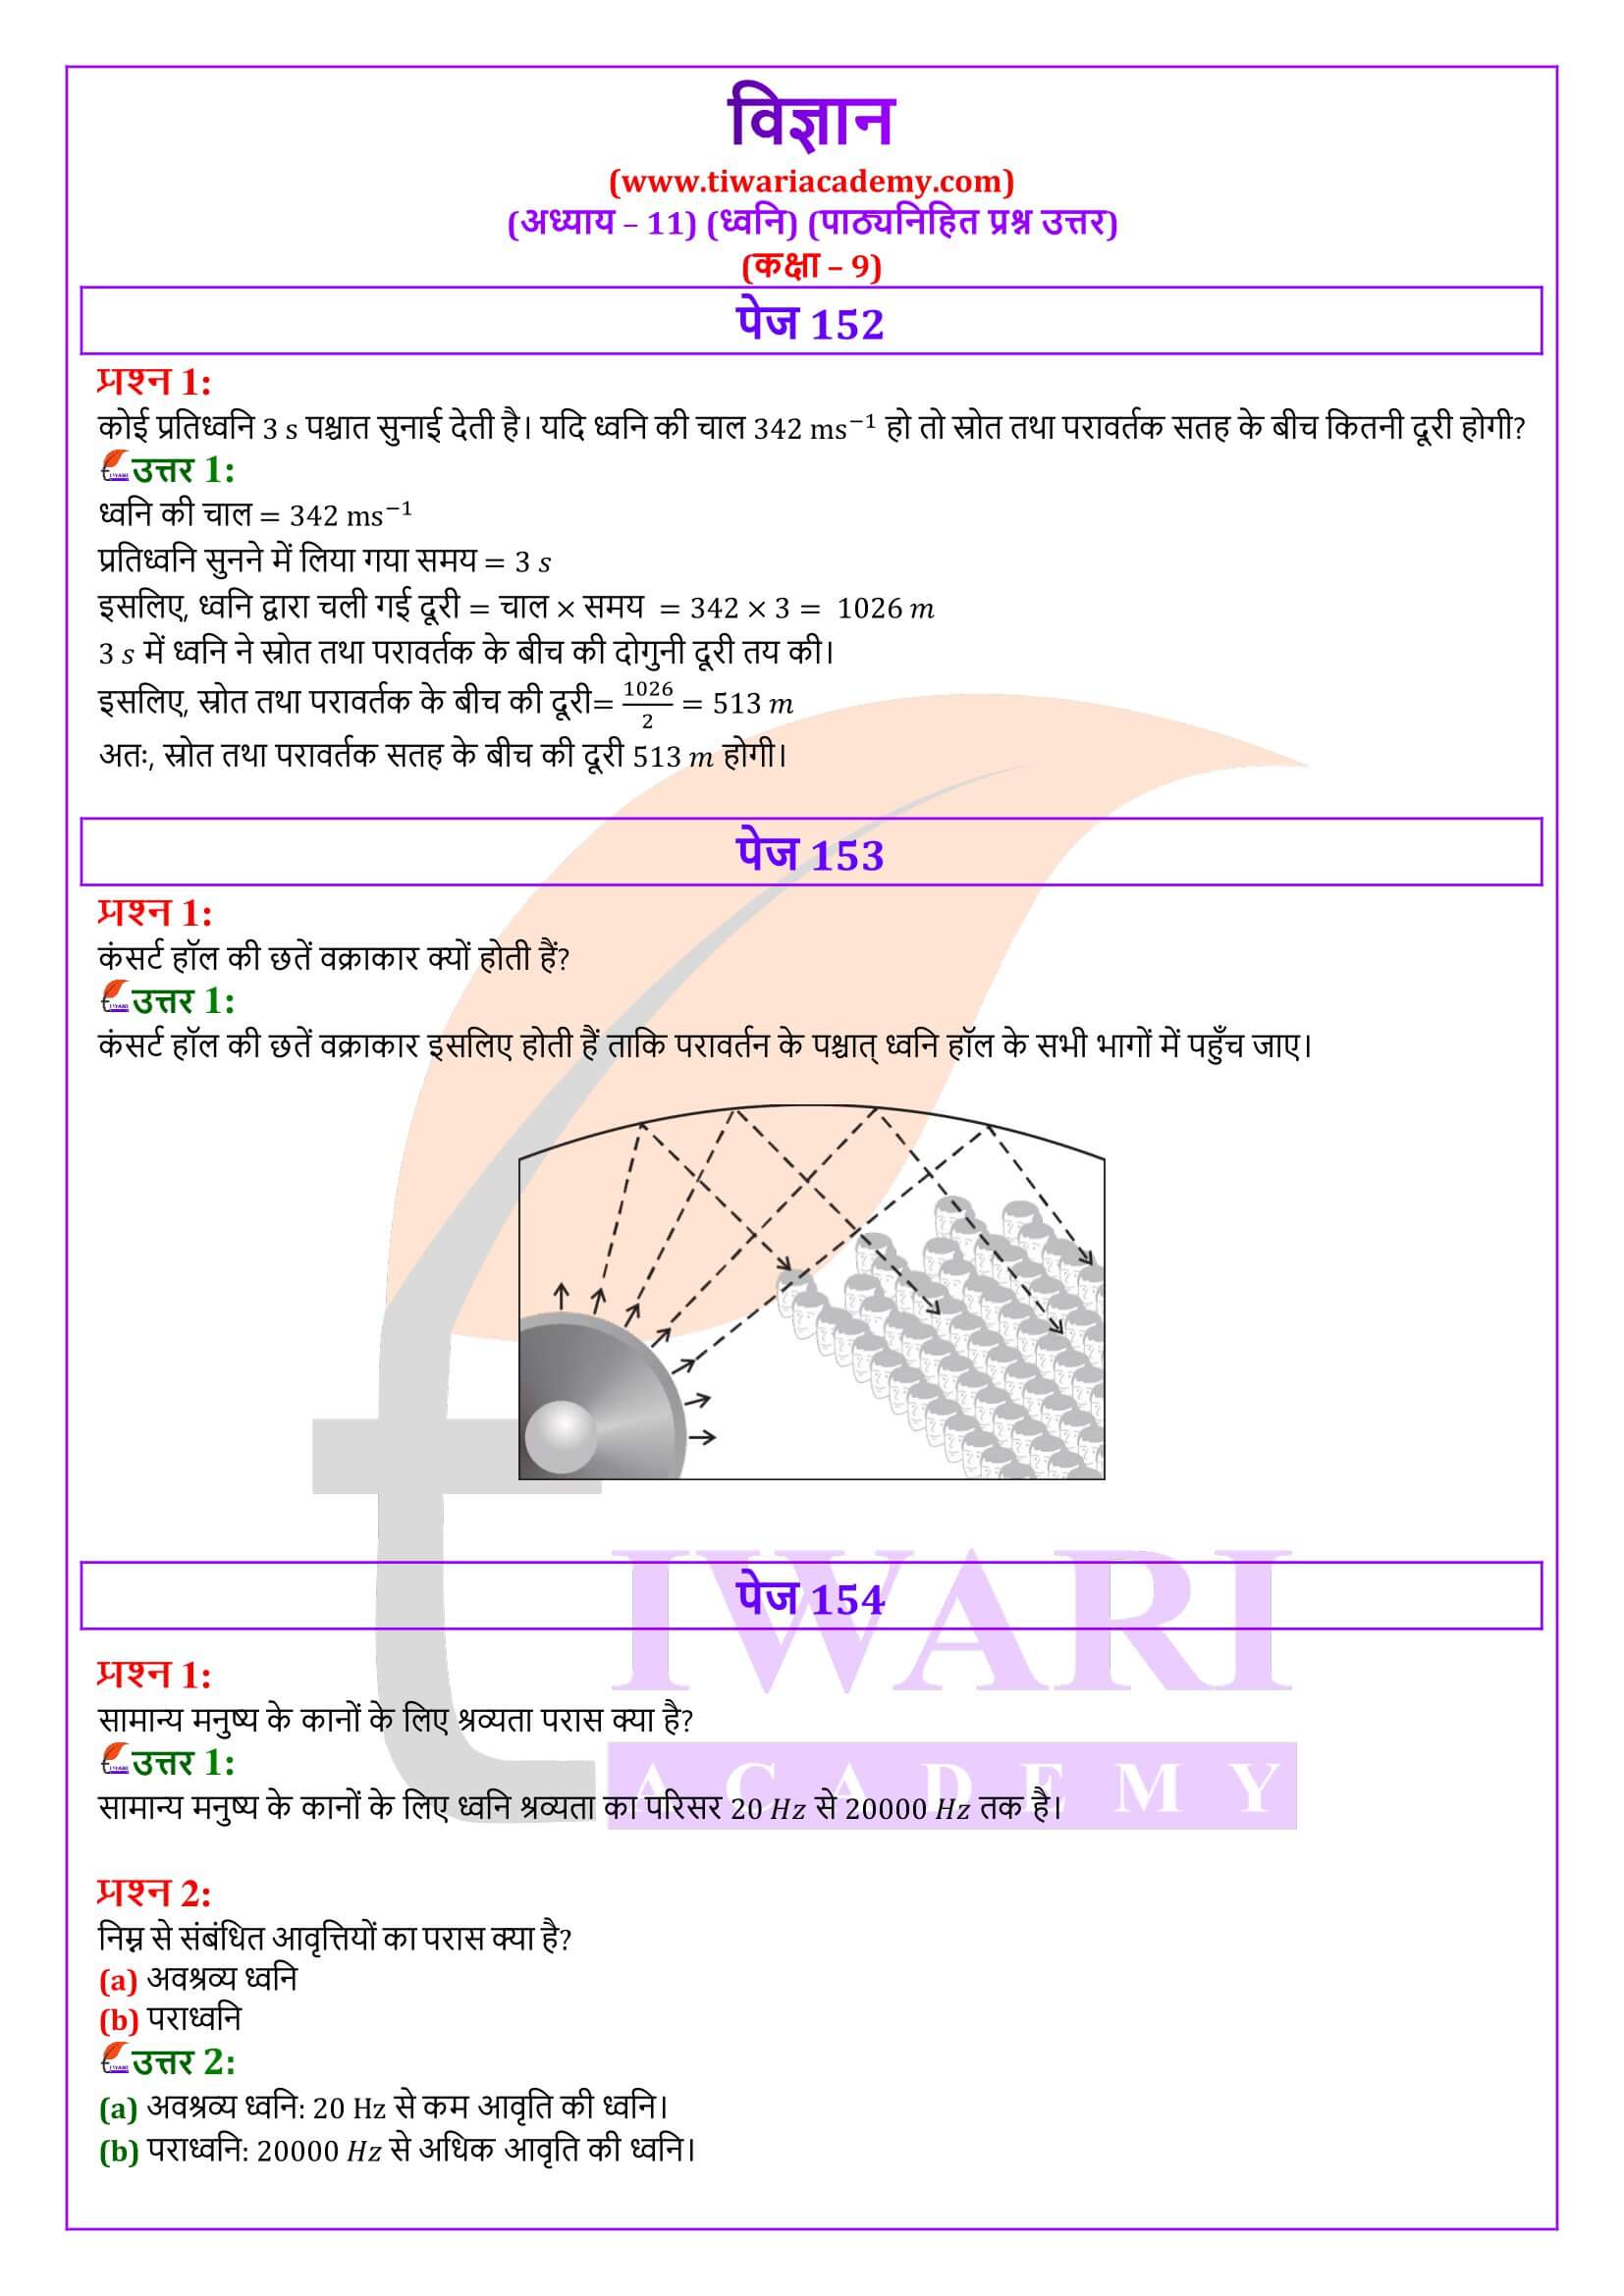 कक्षा 9 विज्ञान पाठ 11 हिंदी में उत्तर